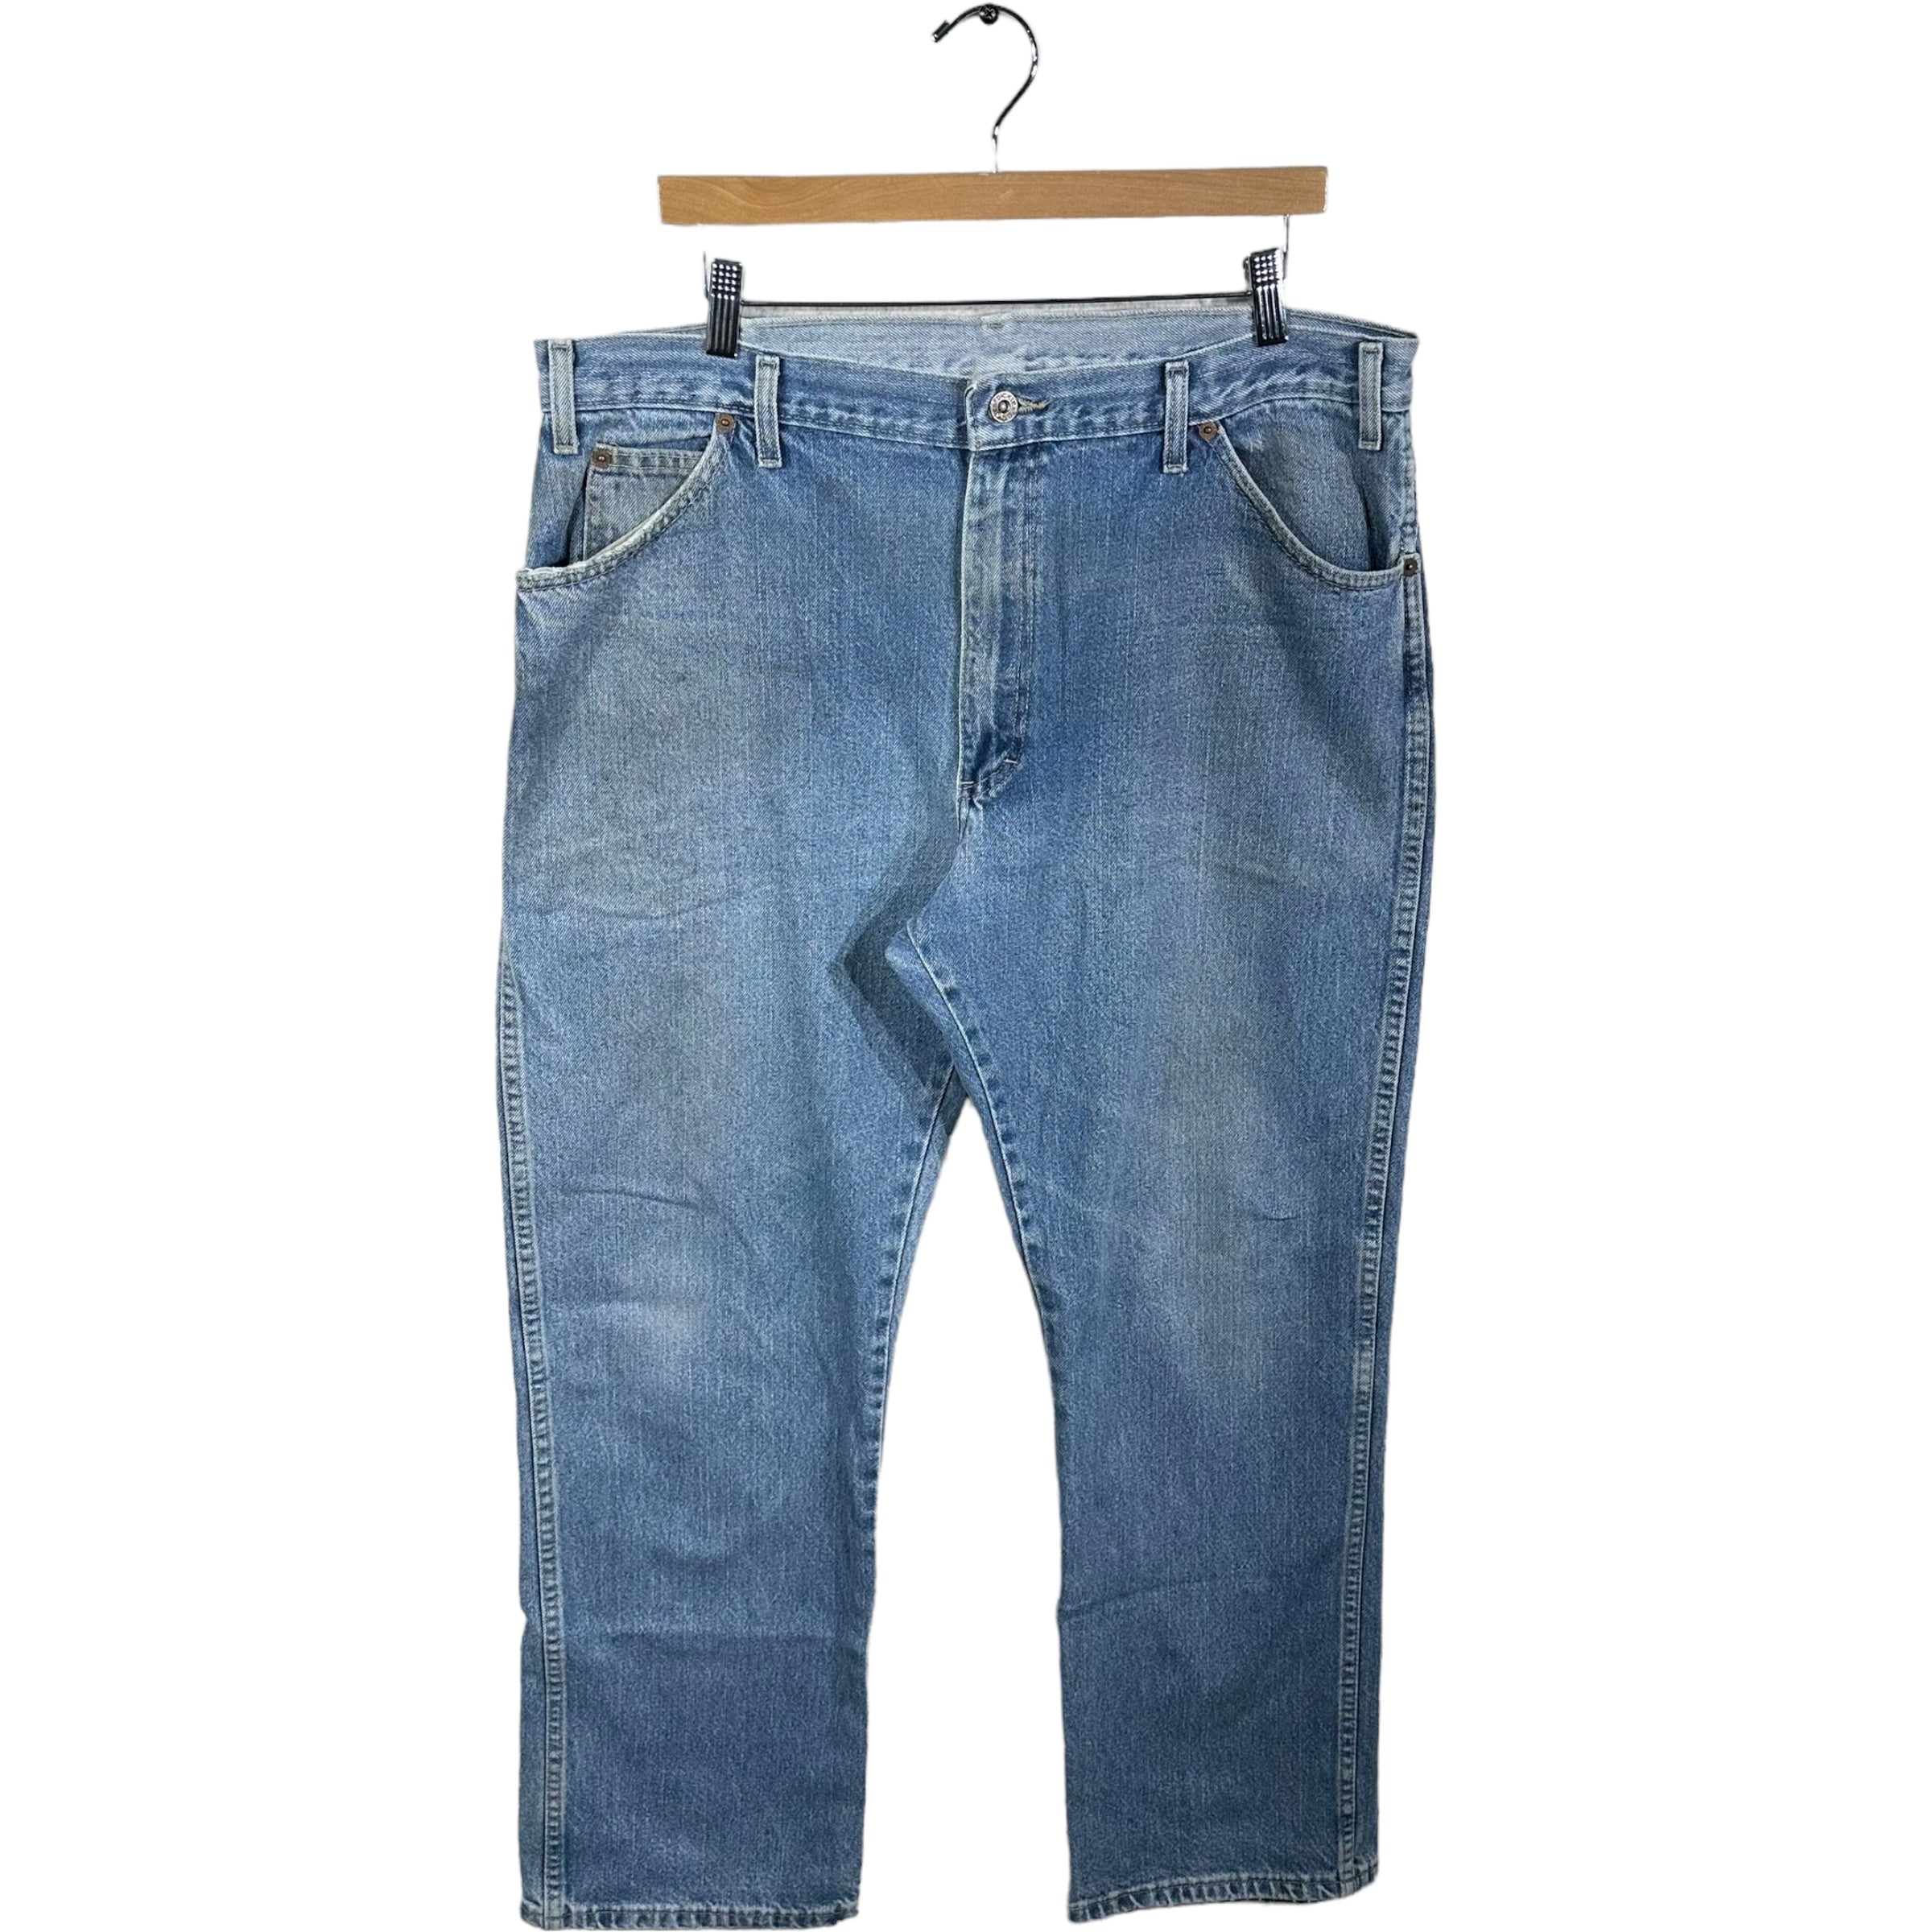 Vintage Dickies Distressed Carpenter Jeans